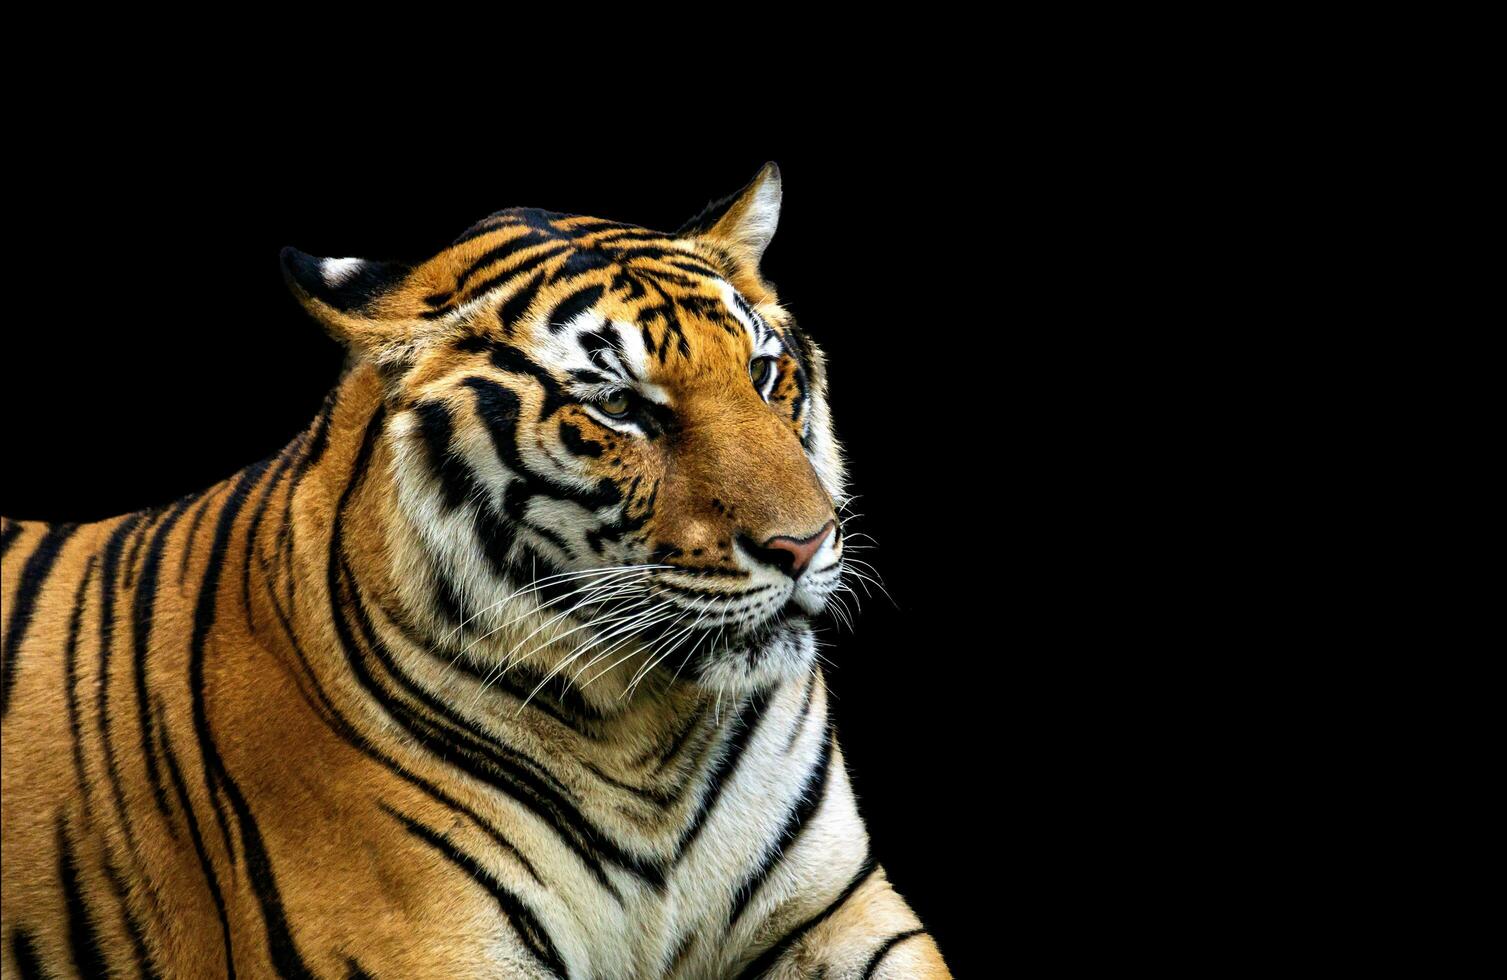 ásia tigres este estão encontrado dentro Tailândia foto